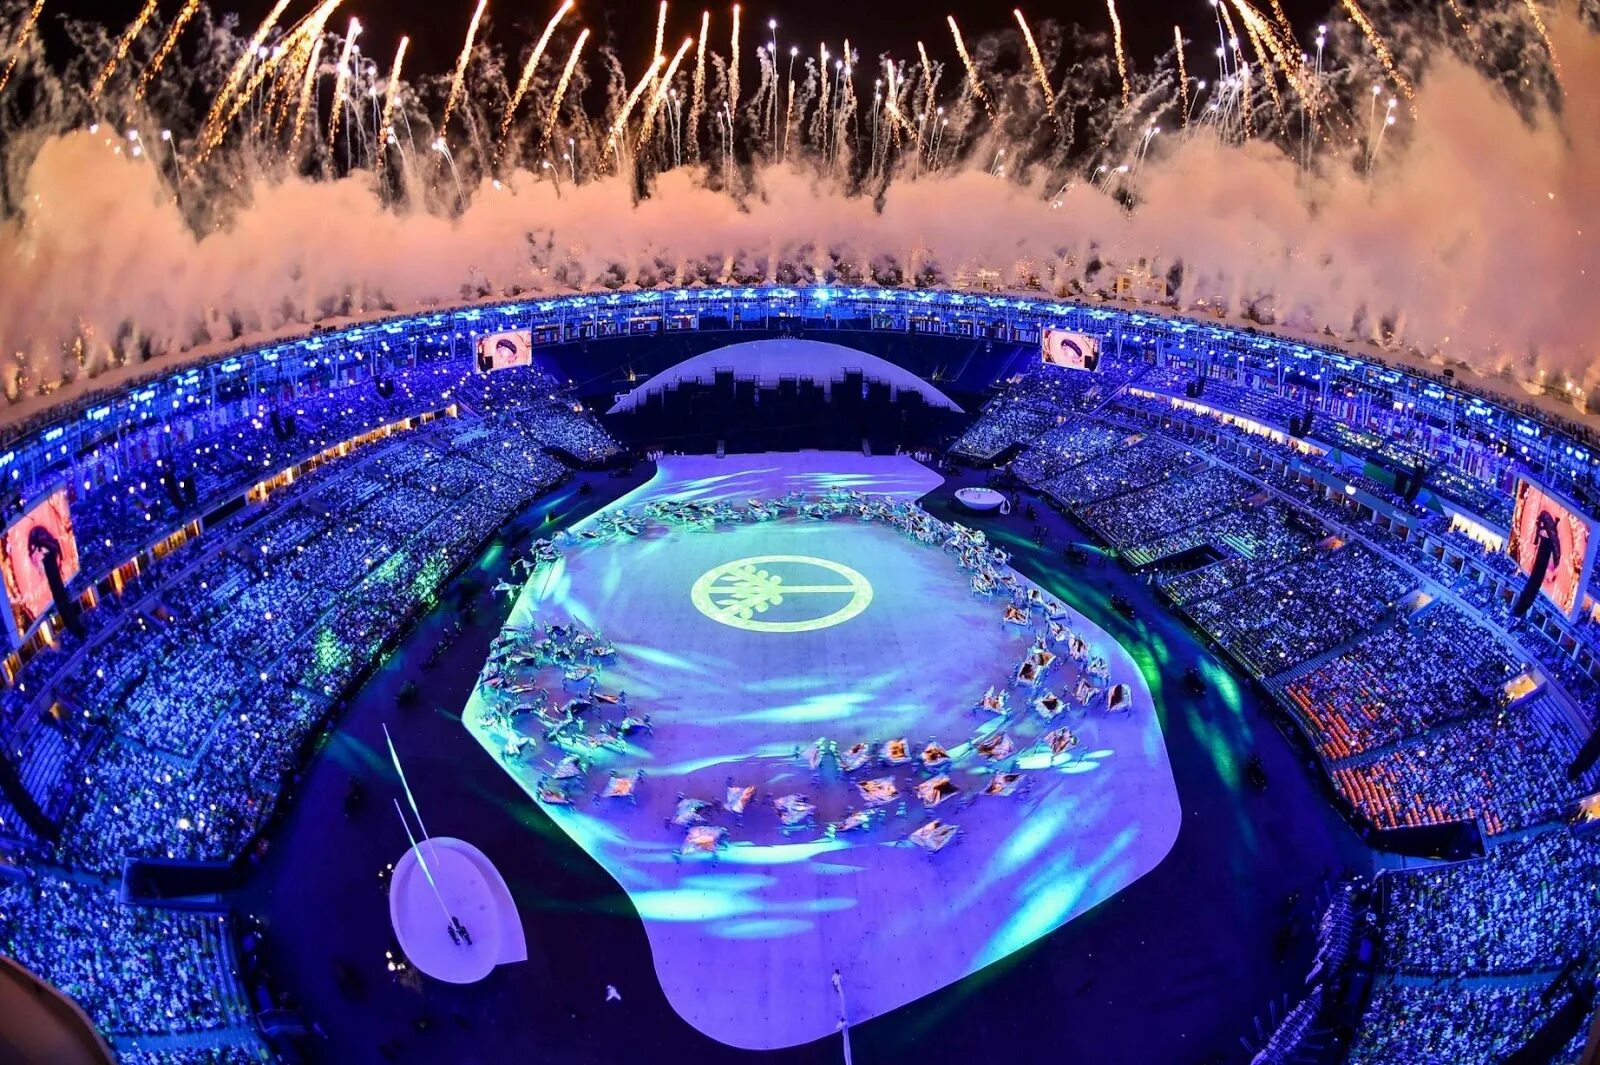 Олимпийские игры 2016 1. Олимпийские игры в Рио де Жанейро 2016. 2016 Рио-де-Жанейро Бразилия. Открытие Олимпийских игр в Рио де Жанейро 2016.